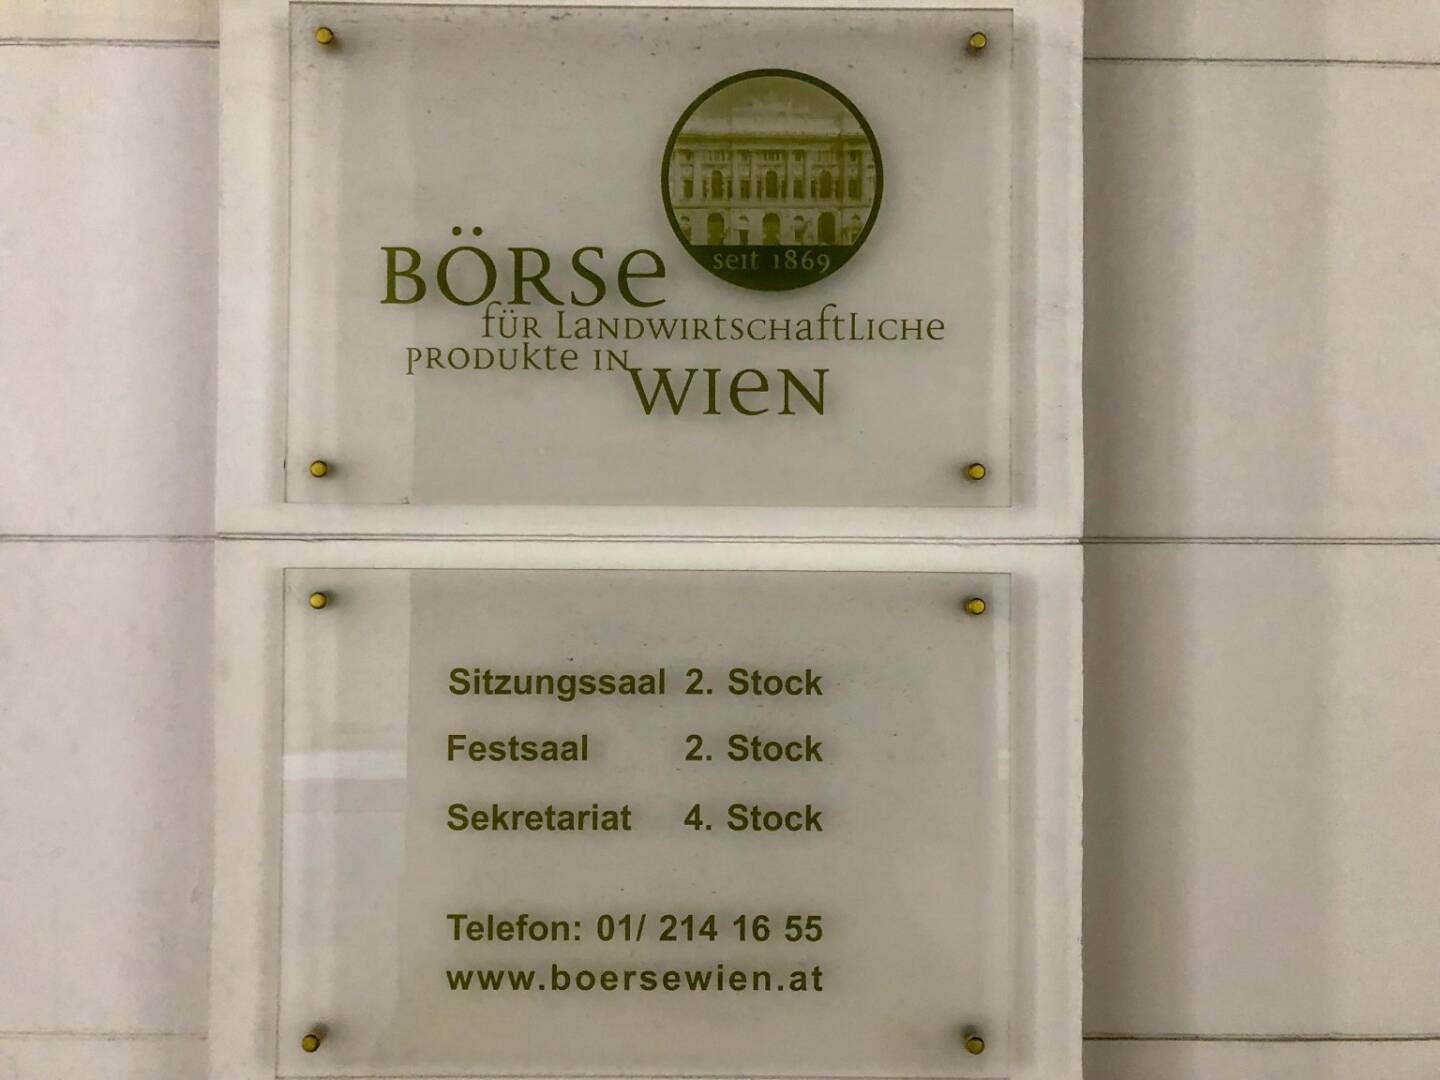 Börse für landwirtschaftliche Produkte in Wien - www.boersewien.at